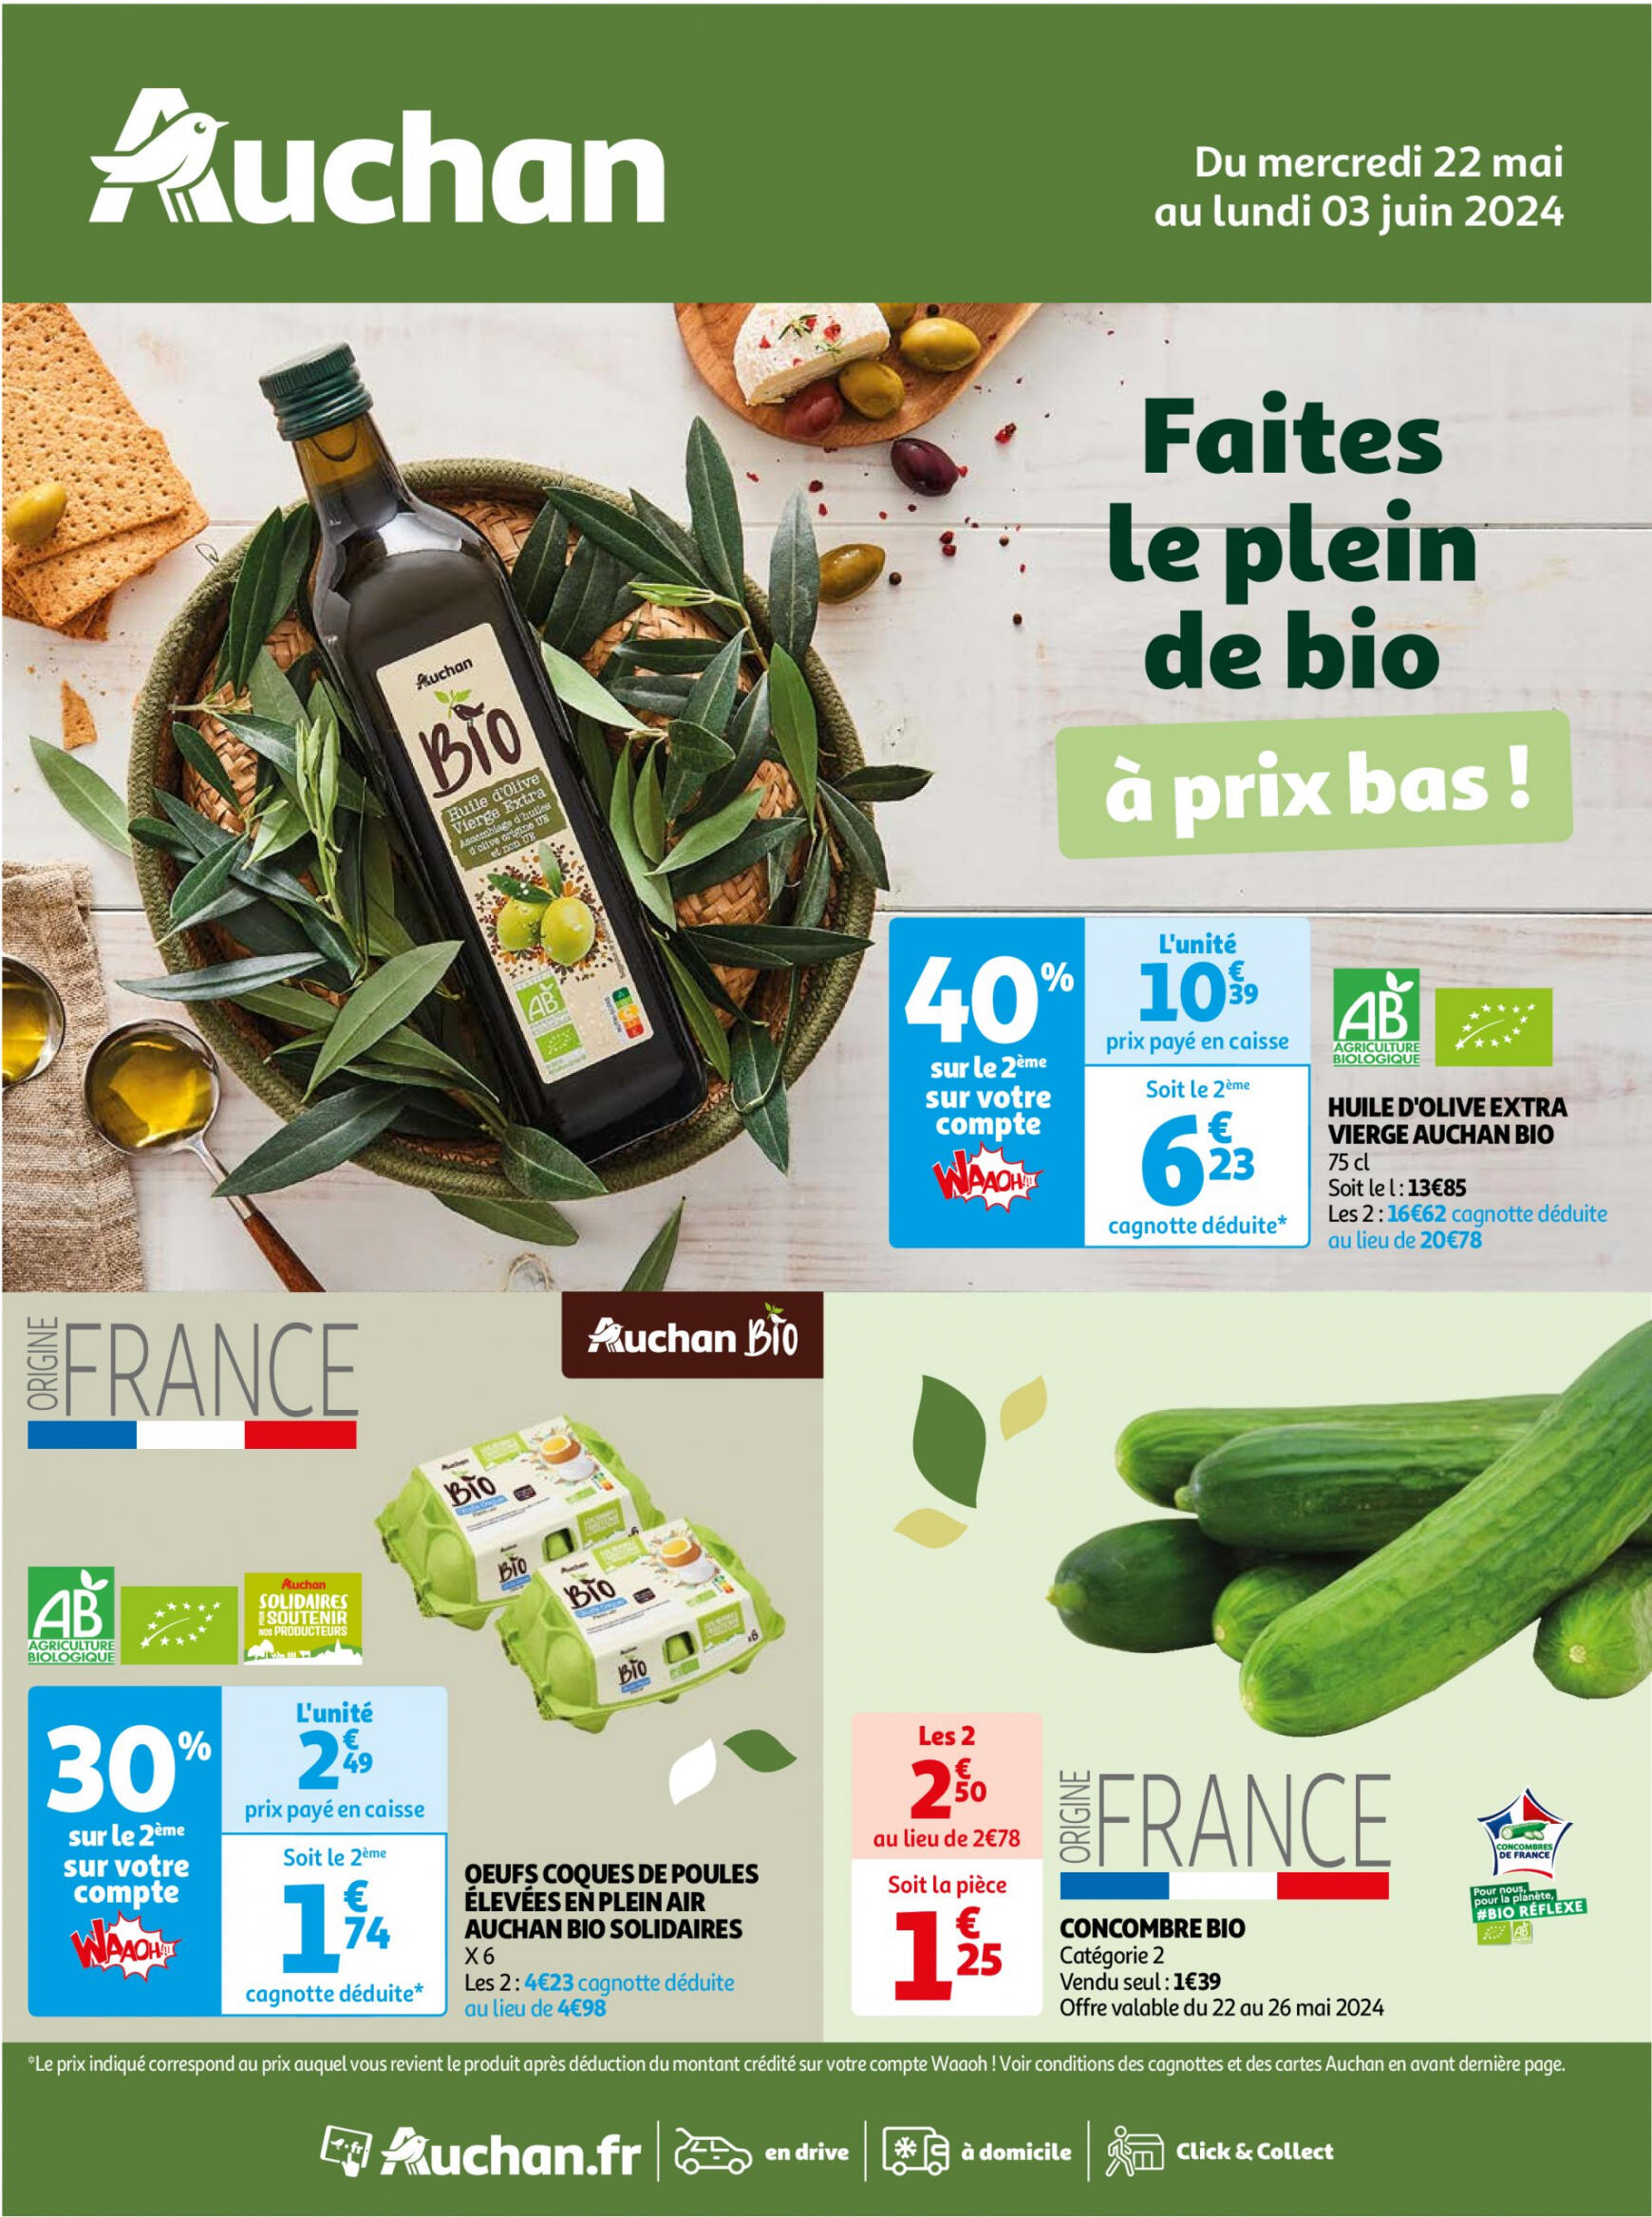 auchan - Auchan - Faites le plein de bio à prix bas folder huidig 22.05. - 03.06. - page: 1